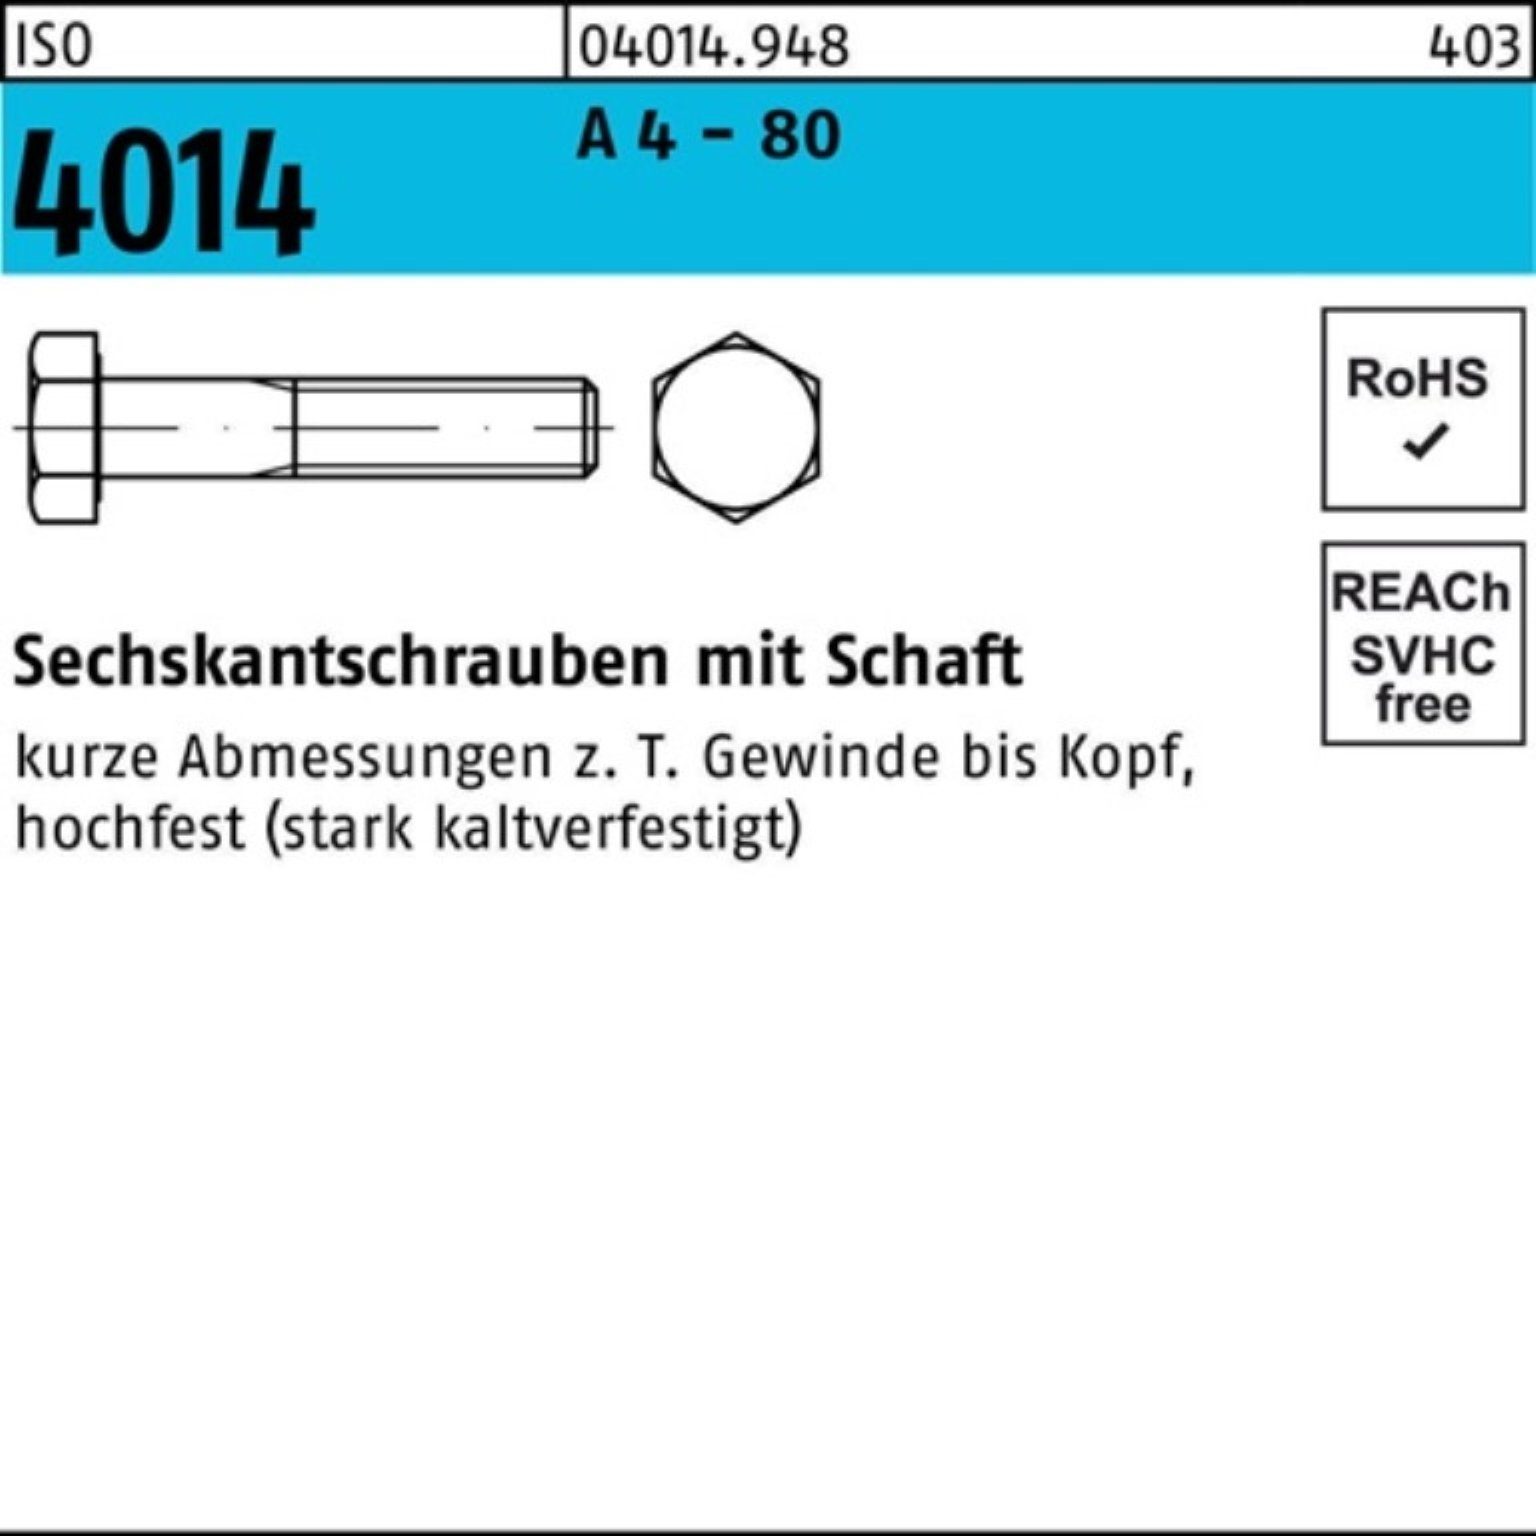 Bufab Sechskantschraube 4 - M16x A 80 25 100er Pack 4014 Stüc Sechskantschraube ISO Schaft 75